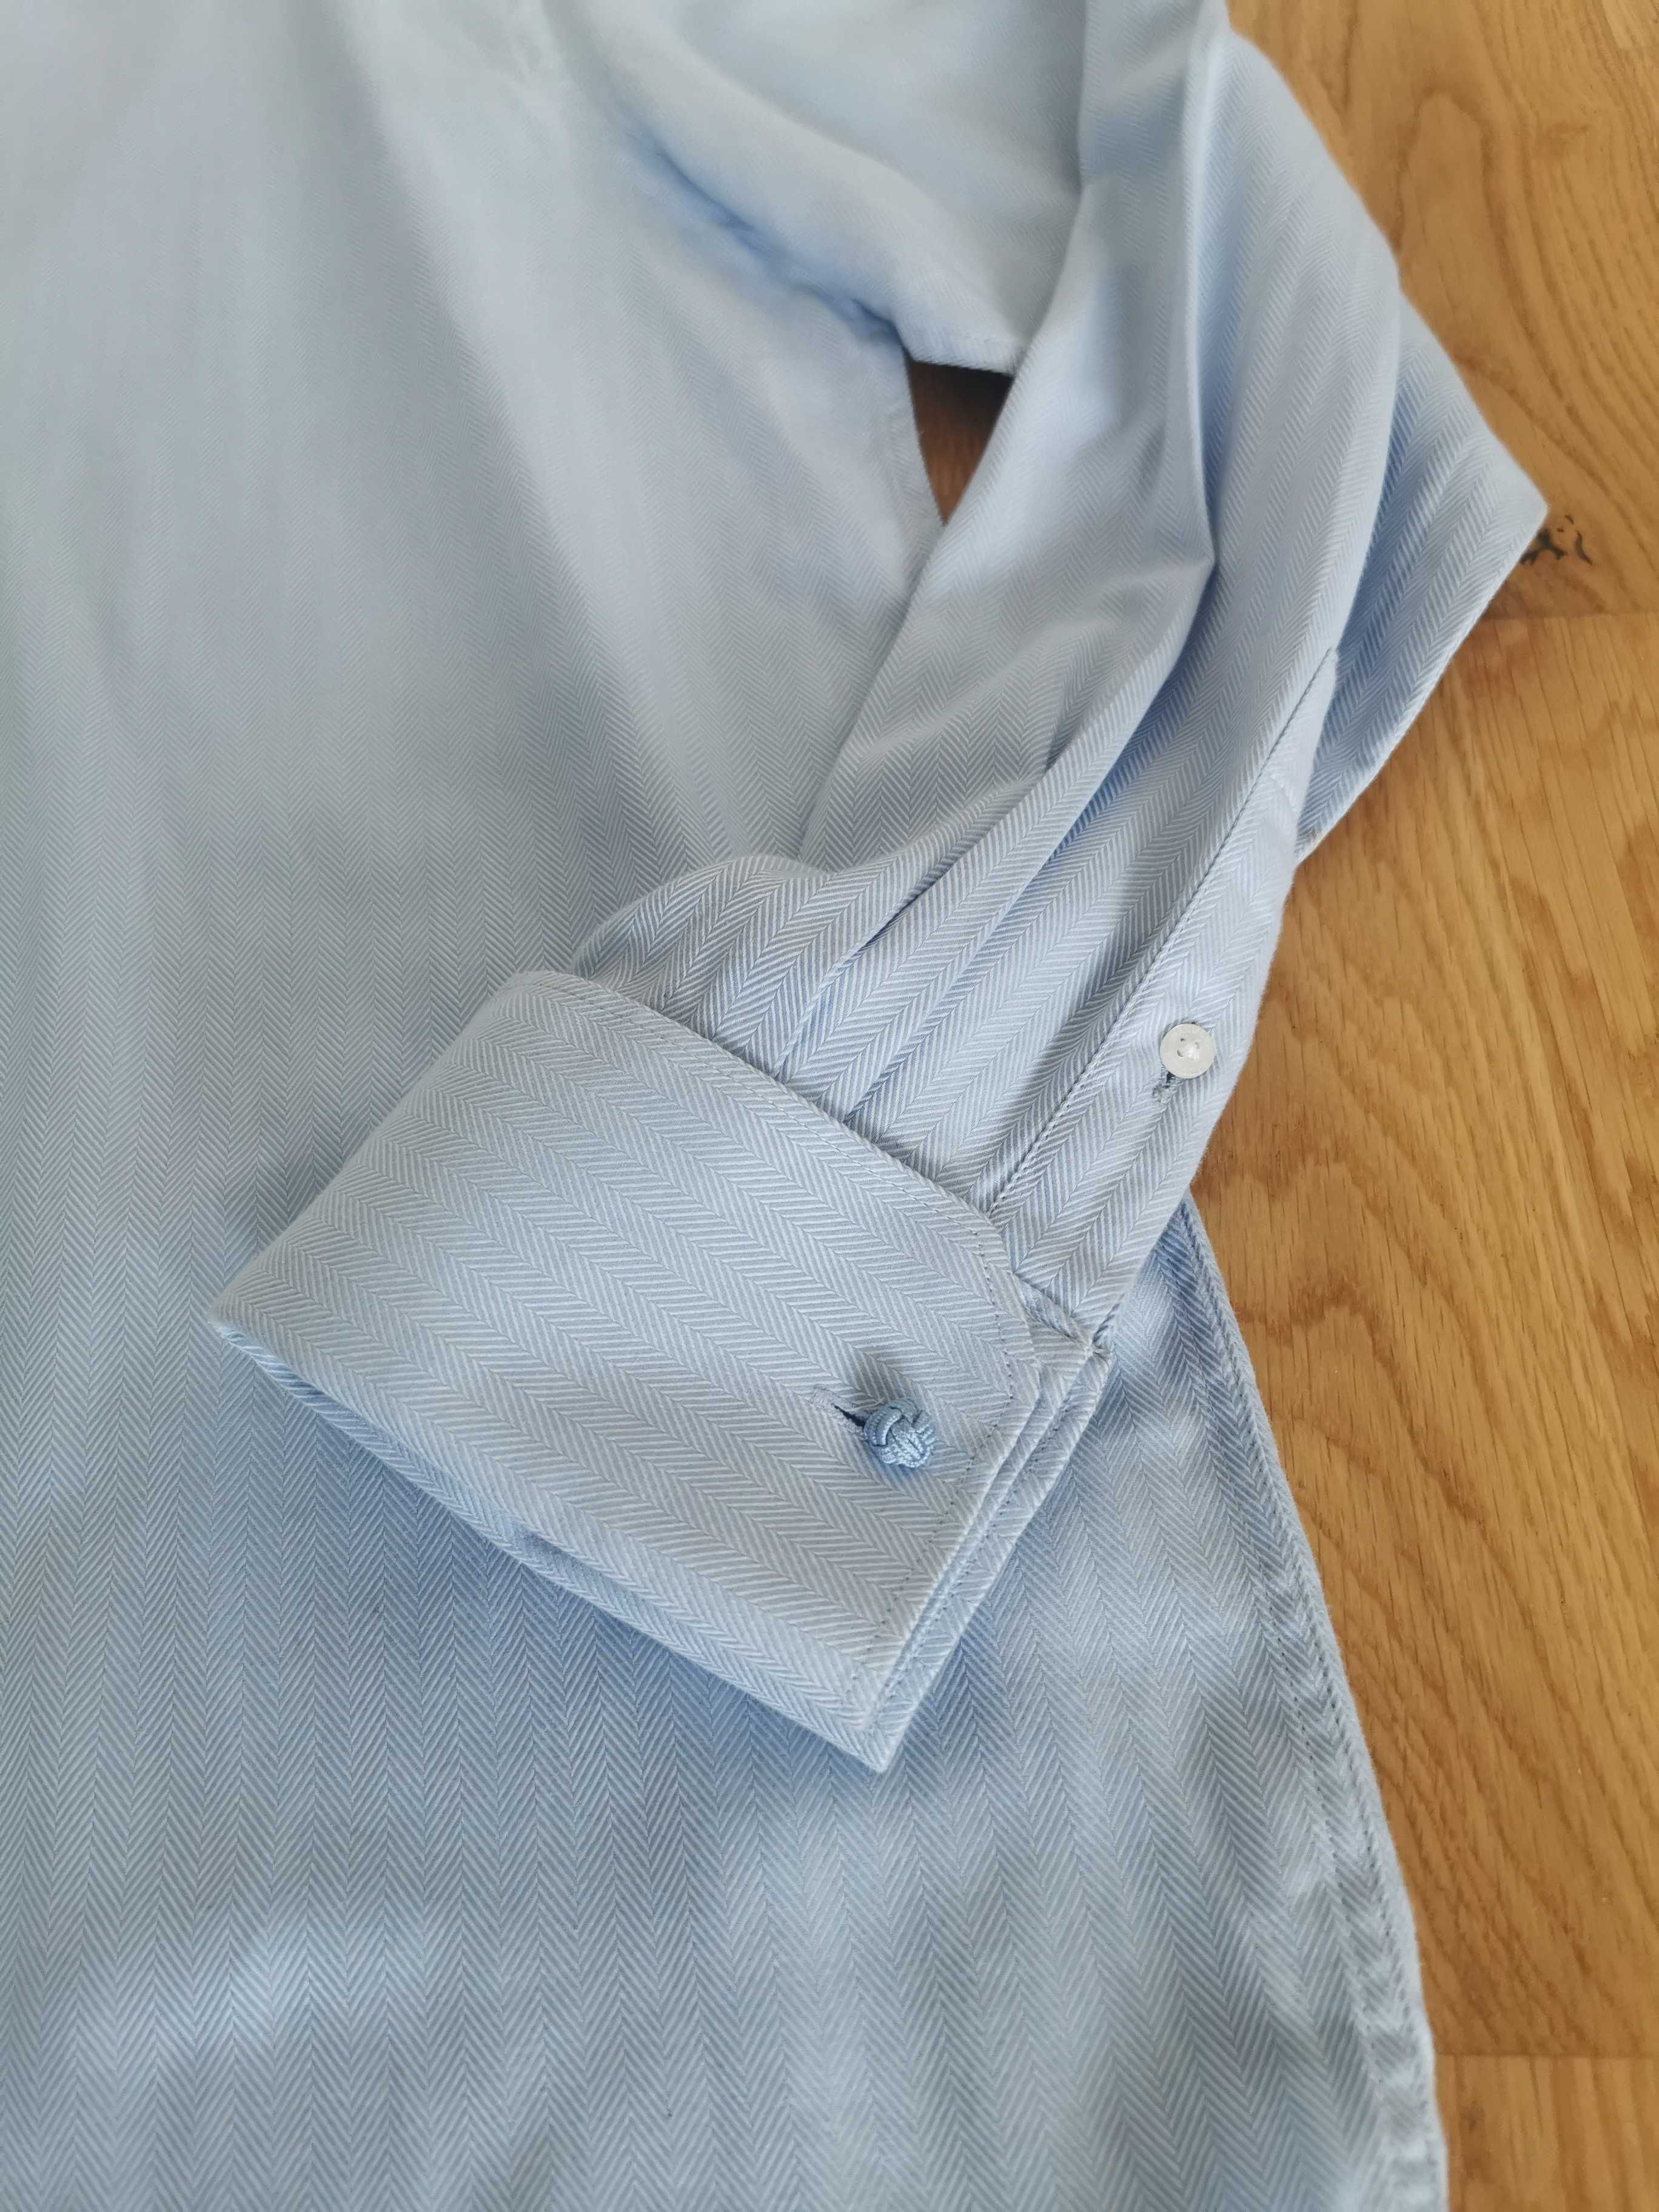 Koszula męska błękitna, miękka bawełna 100%